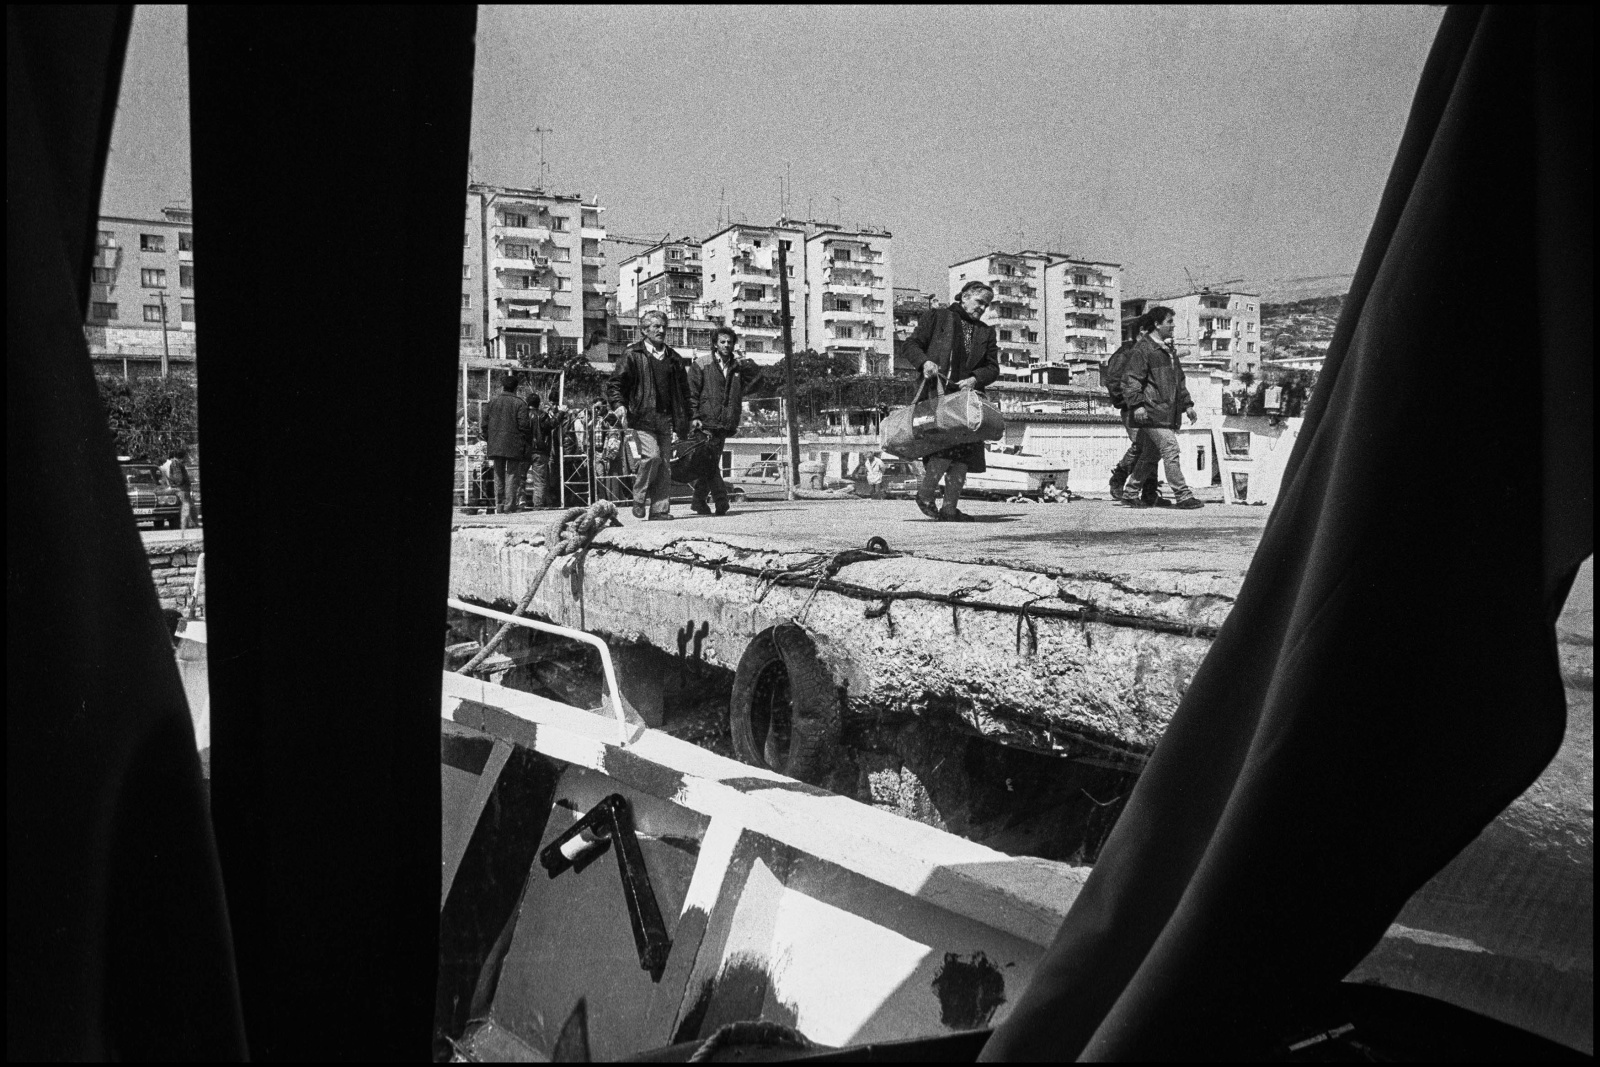 Albania 1997, in fuga con i profughi albanesi sui barconi degli scafisti da Saranda a Corfù durante la rivolta nella città in mano ai gruppi armati di bande criminali.